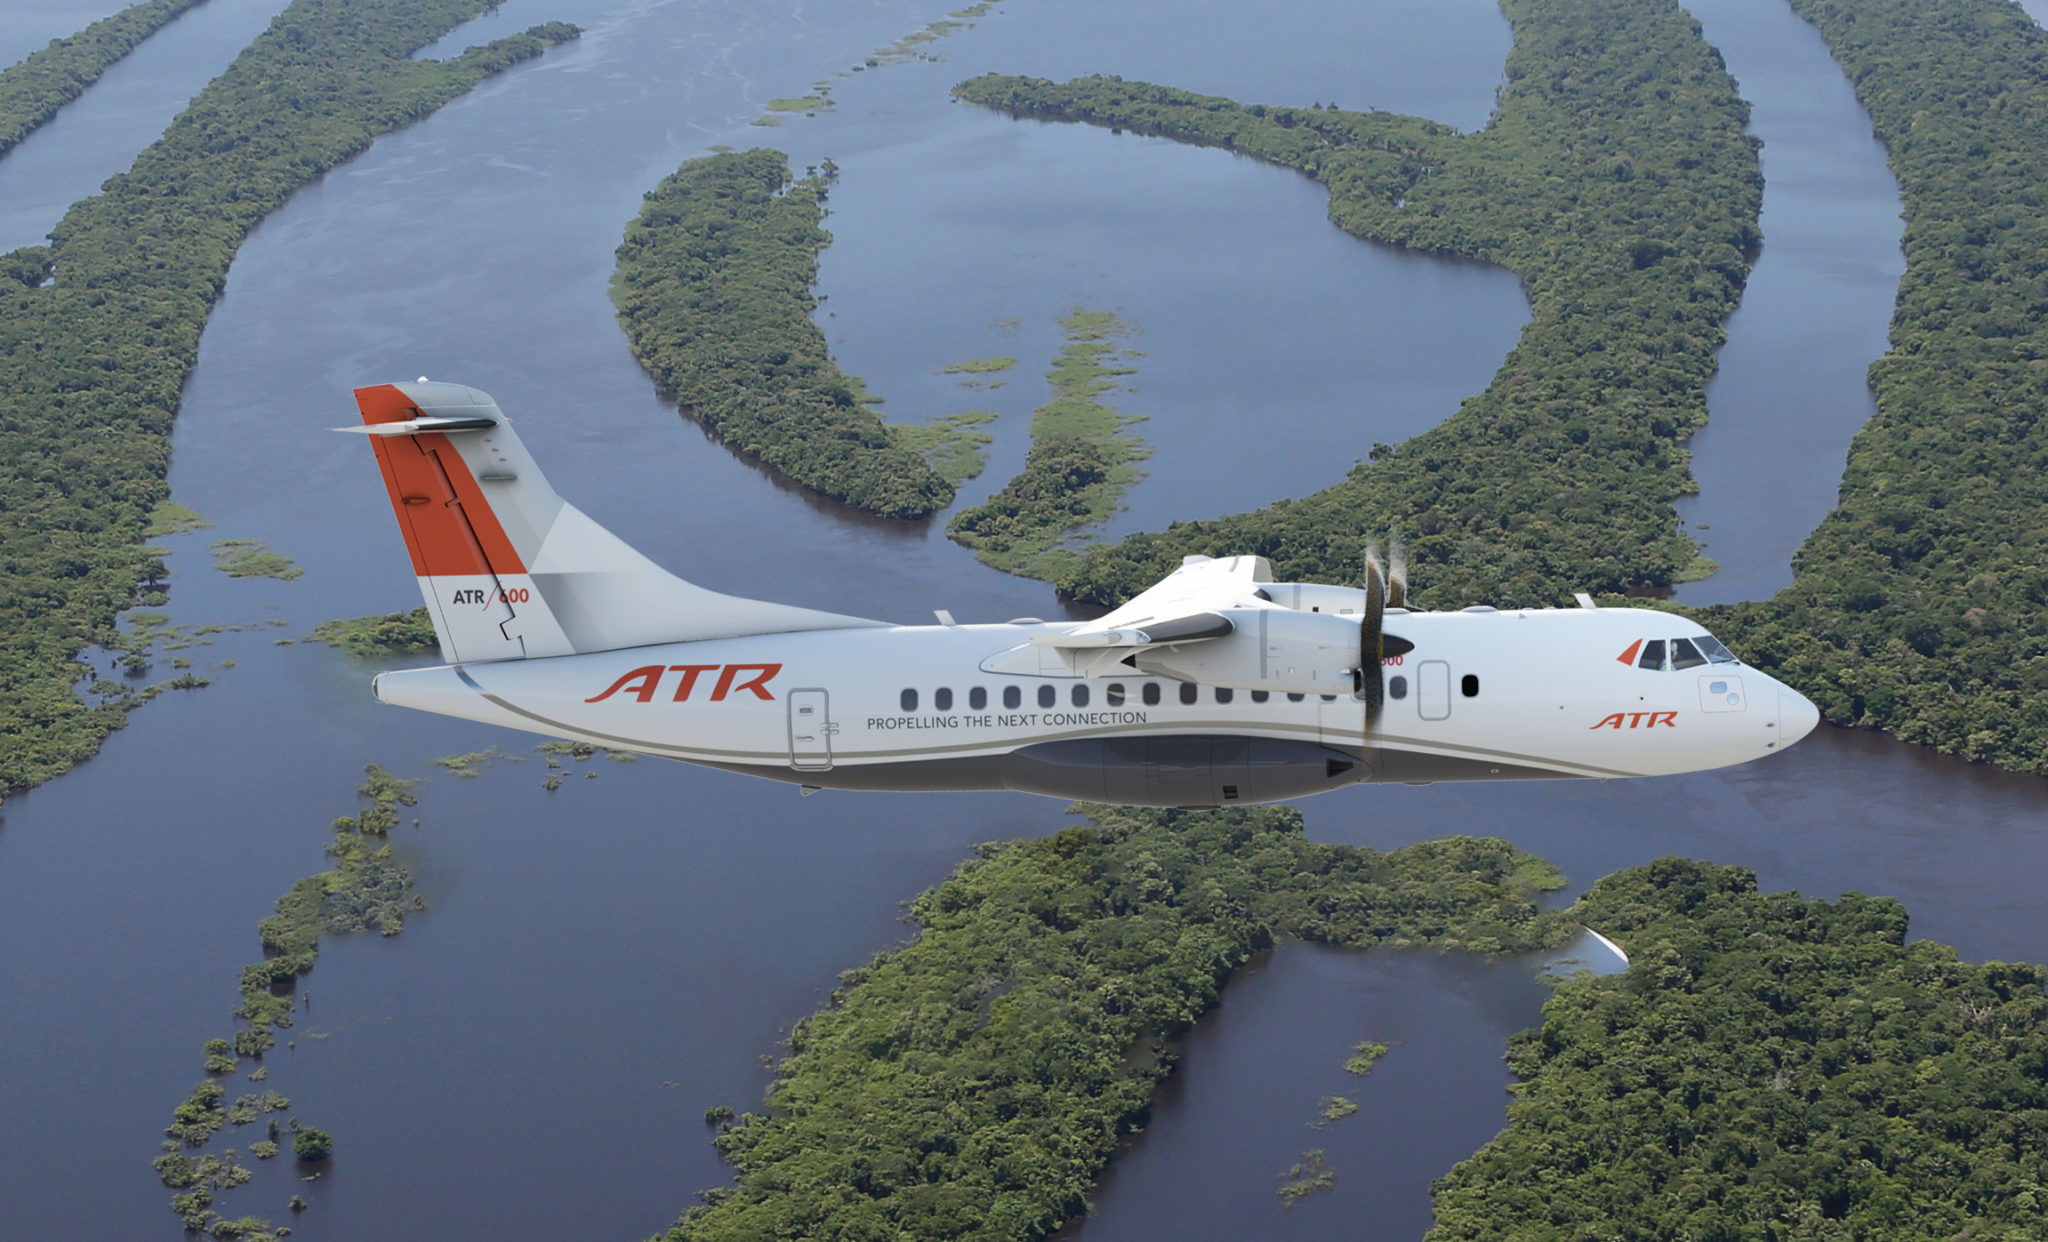 ATR 42-600 aircraft, Regional turboprop, ATR aircraft models, Avionics technology, 2050x1250 HD Desktop